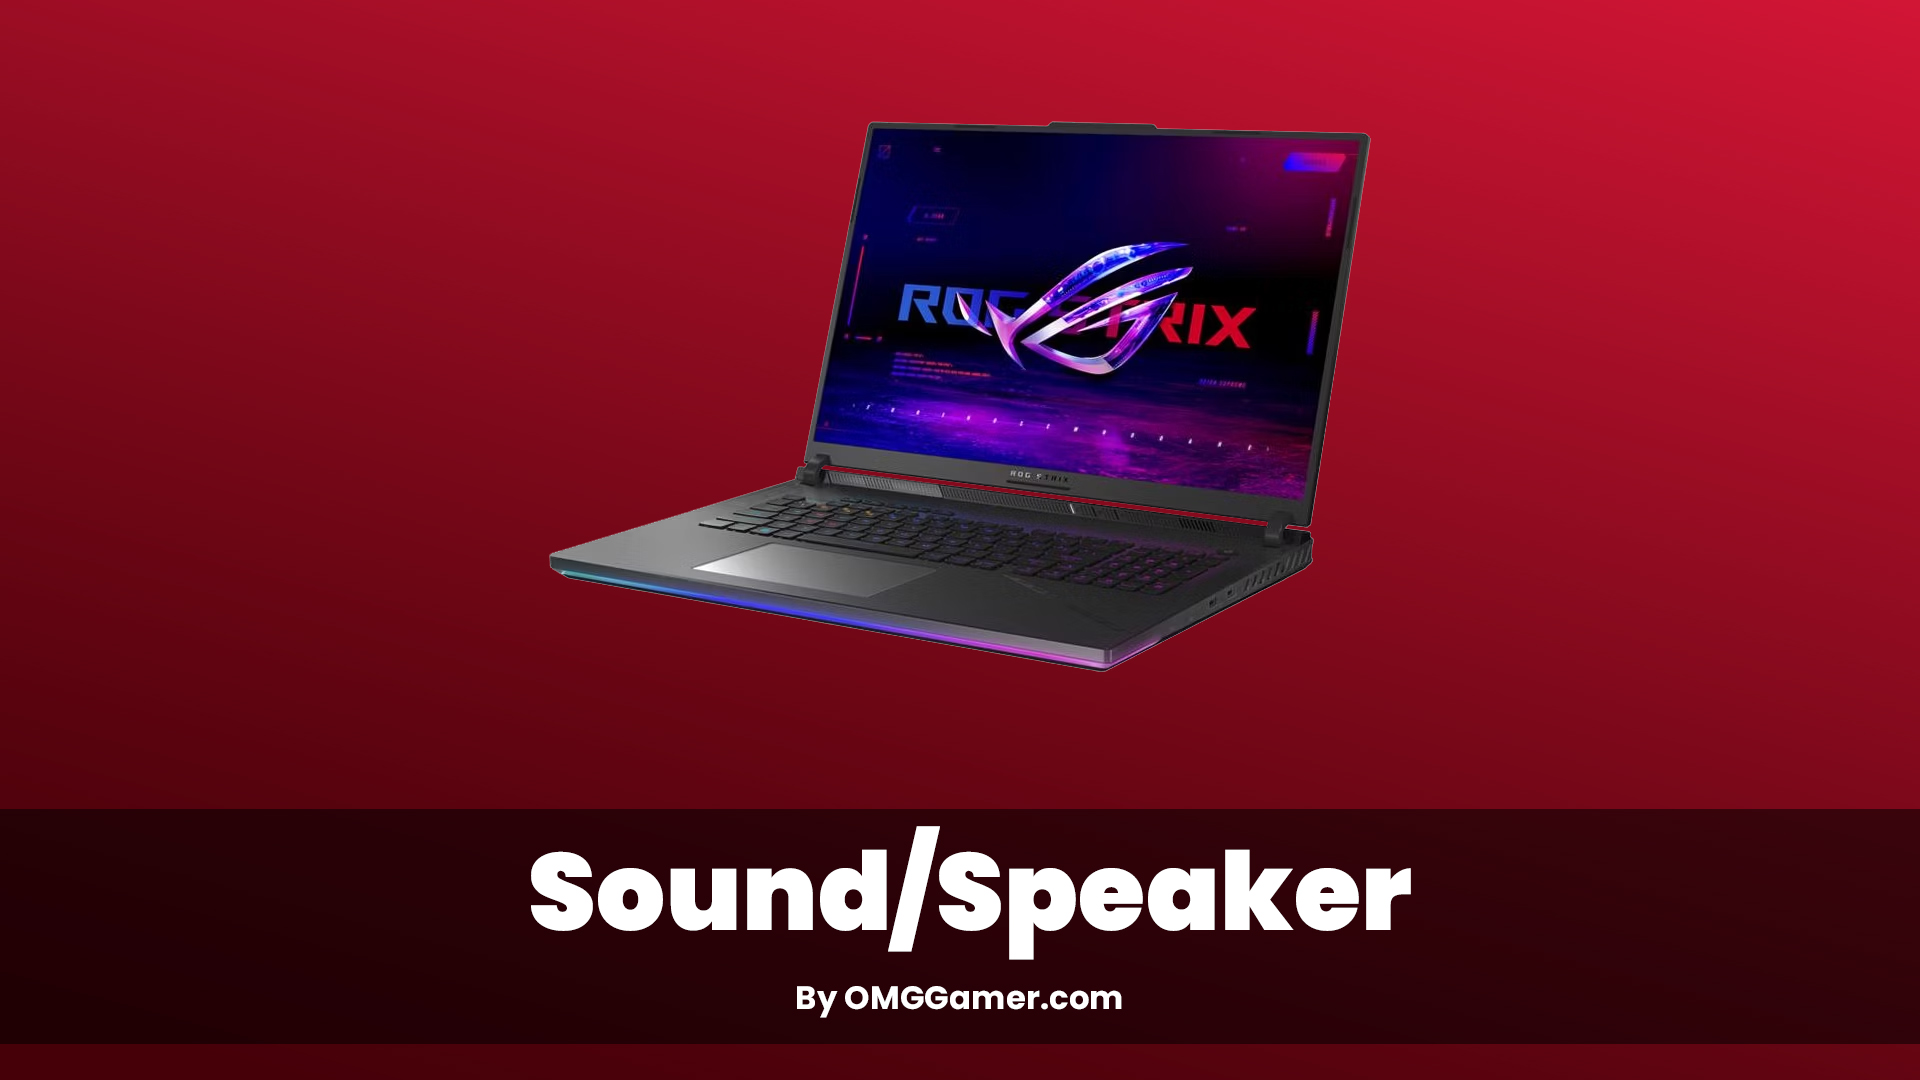 Rog Strix 18 Sound/Speaker